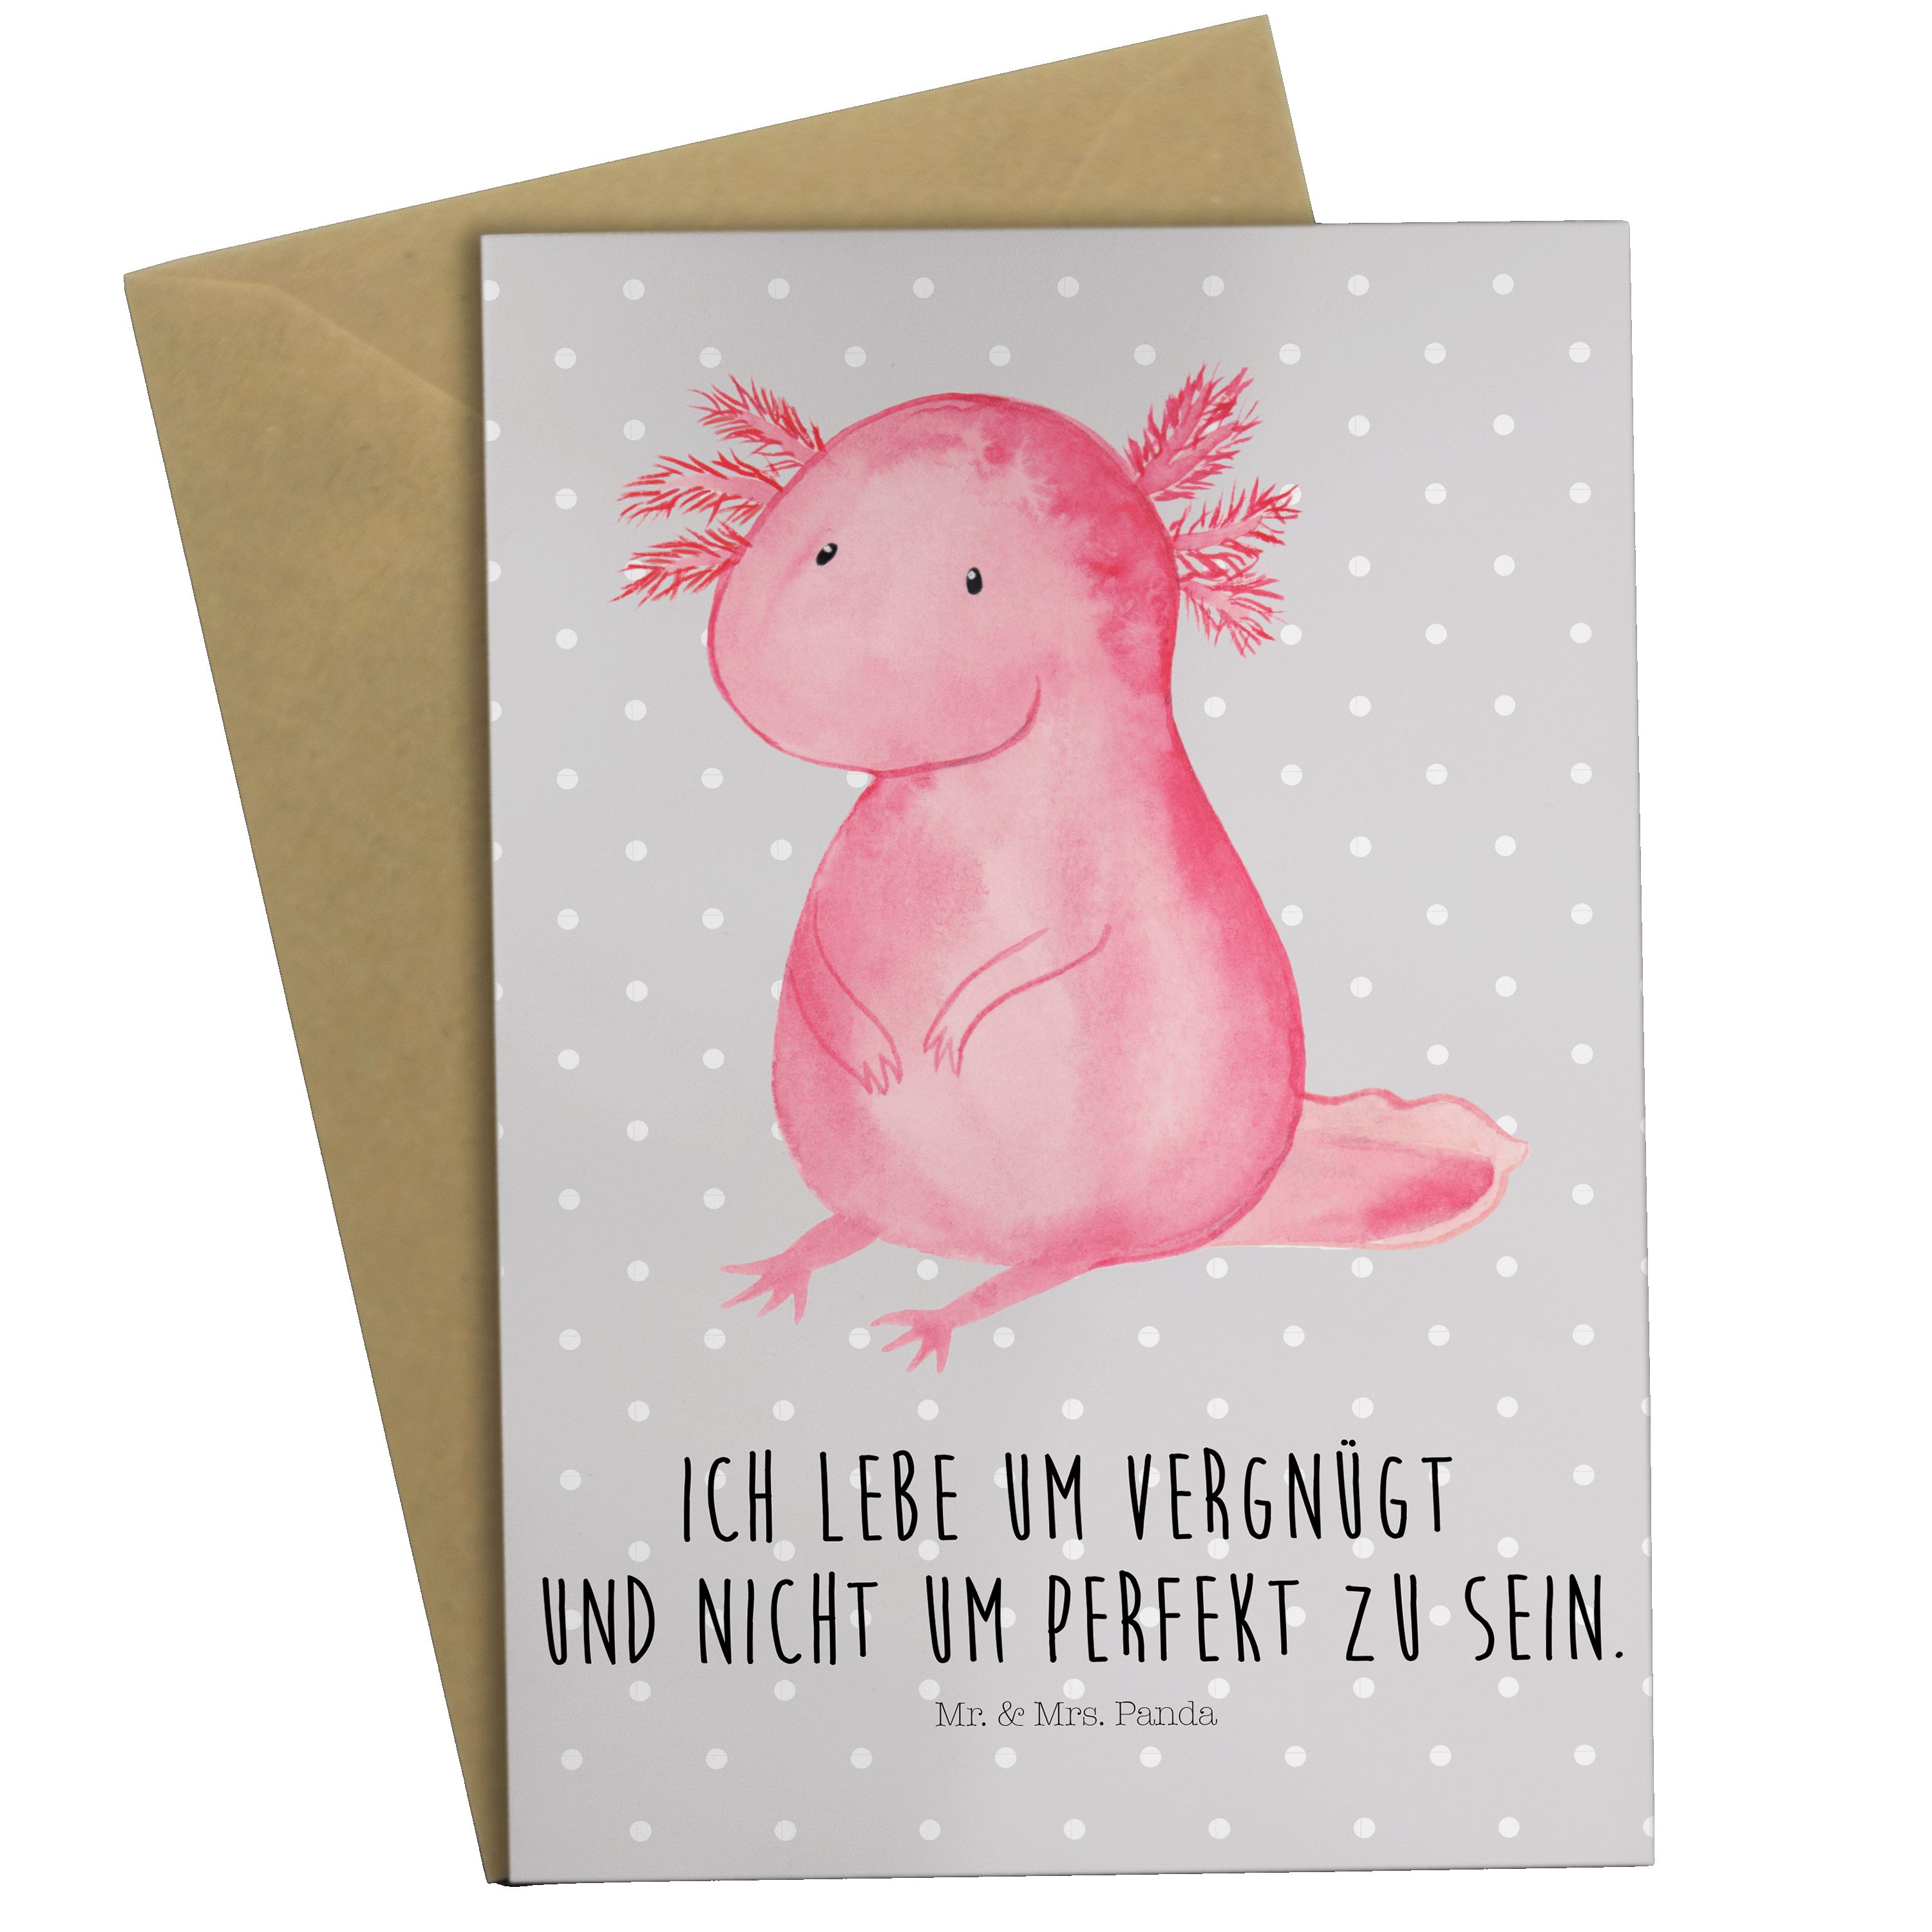 Mr. & Mrs. Panda Grußkarte Axolotl - Grau Pastell - Geschenk, vergnügt, Glückwunschkarte, Liebe